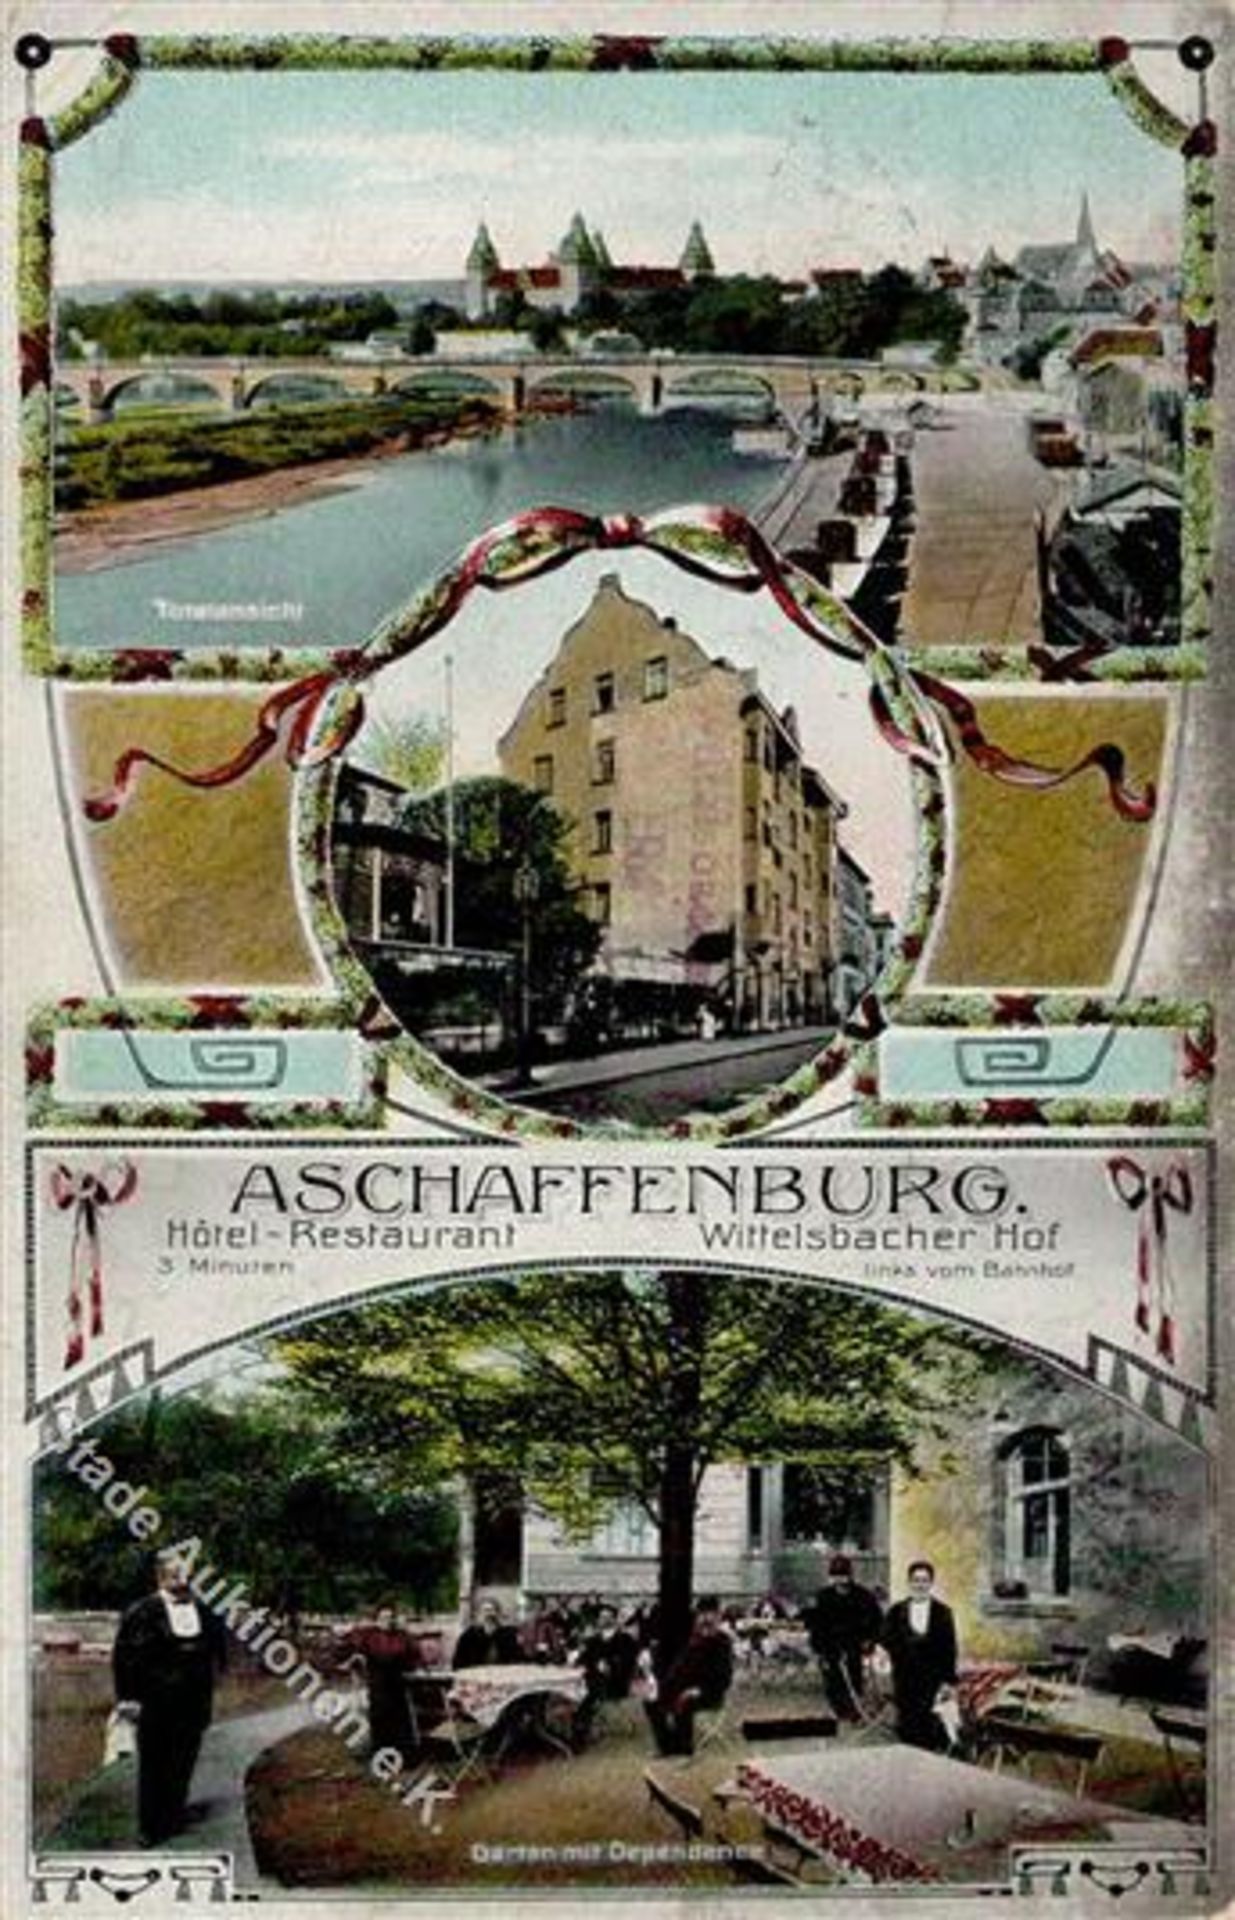 Aschaffenburg (8750) Hotel und Gasthaus Wittelsbacher Hof 1908 II (Ecken abgestossen, Stauchung)